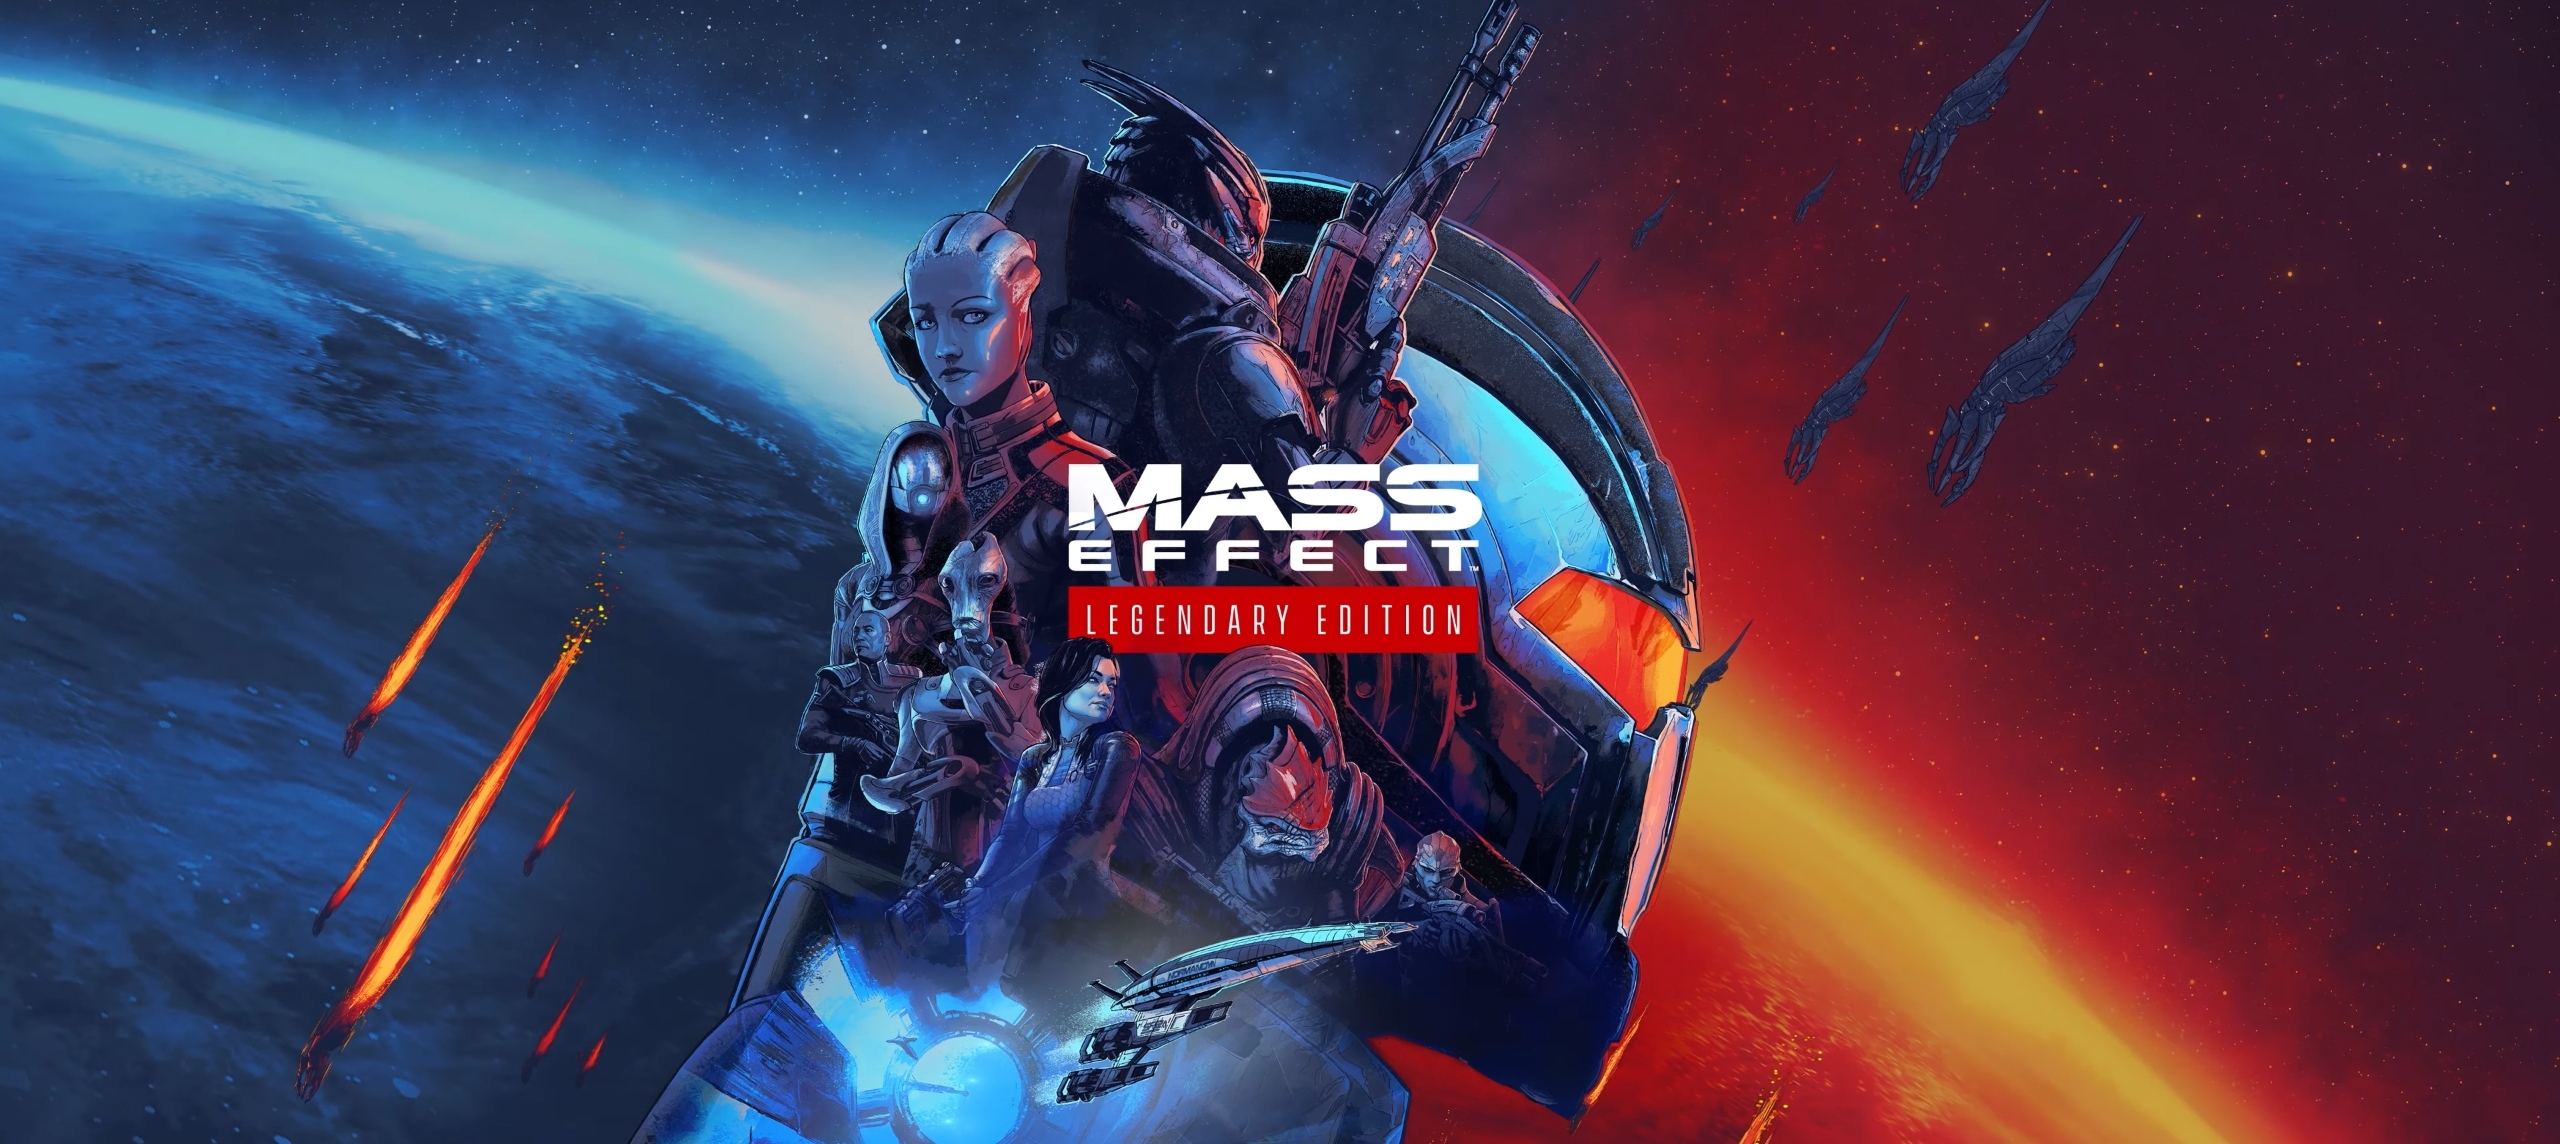 Mass Effect™ Legendary Edition Mass Effect Legendary Edition 100% Achievement Guide - Introduction